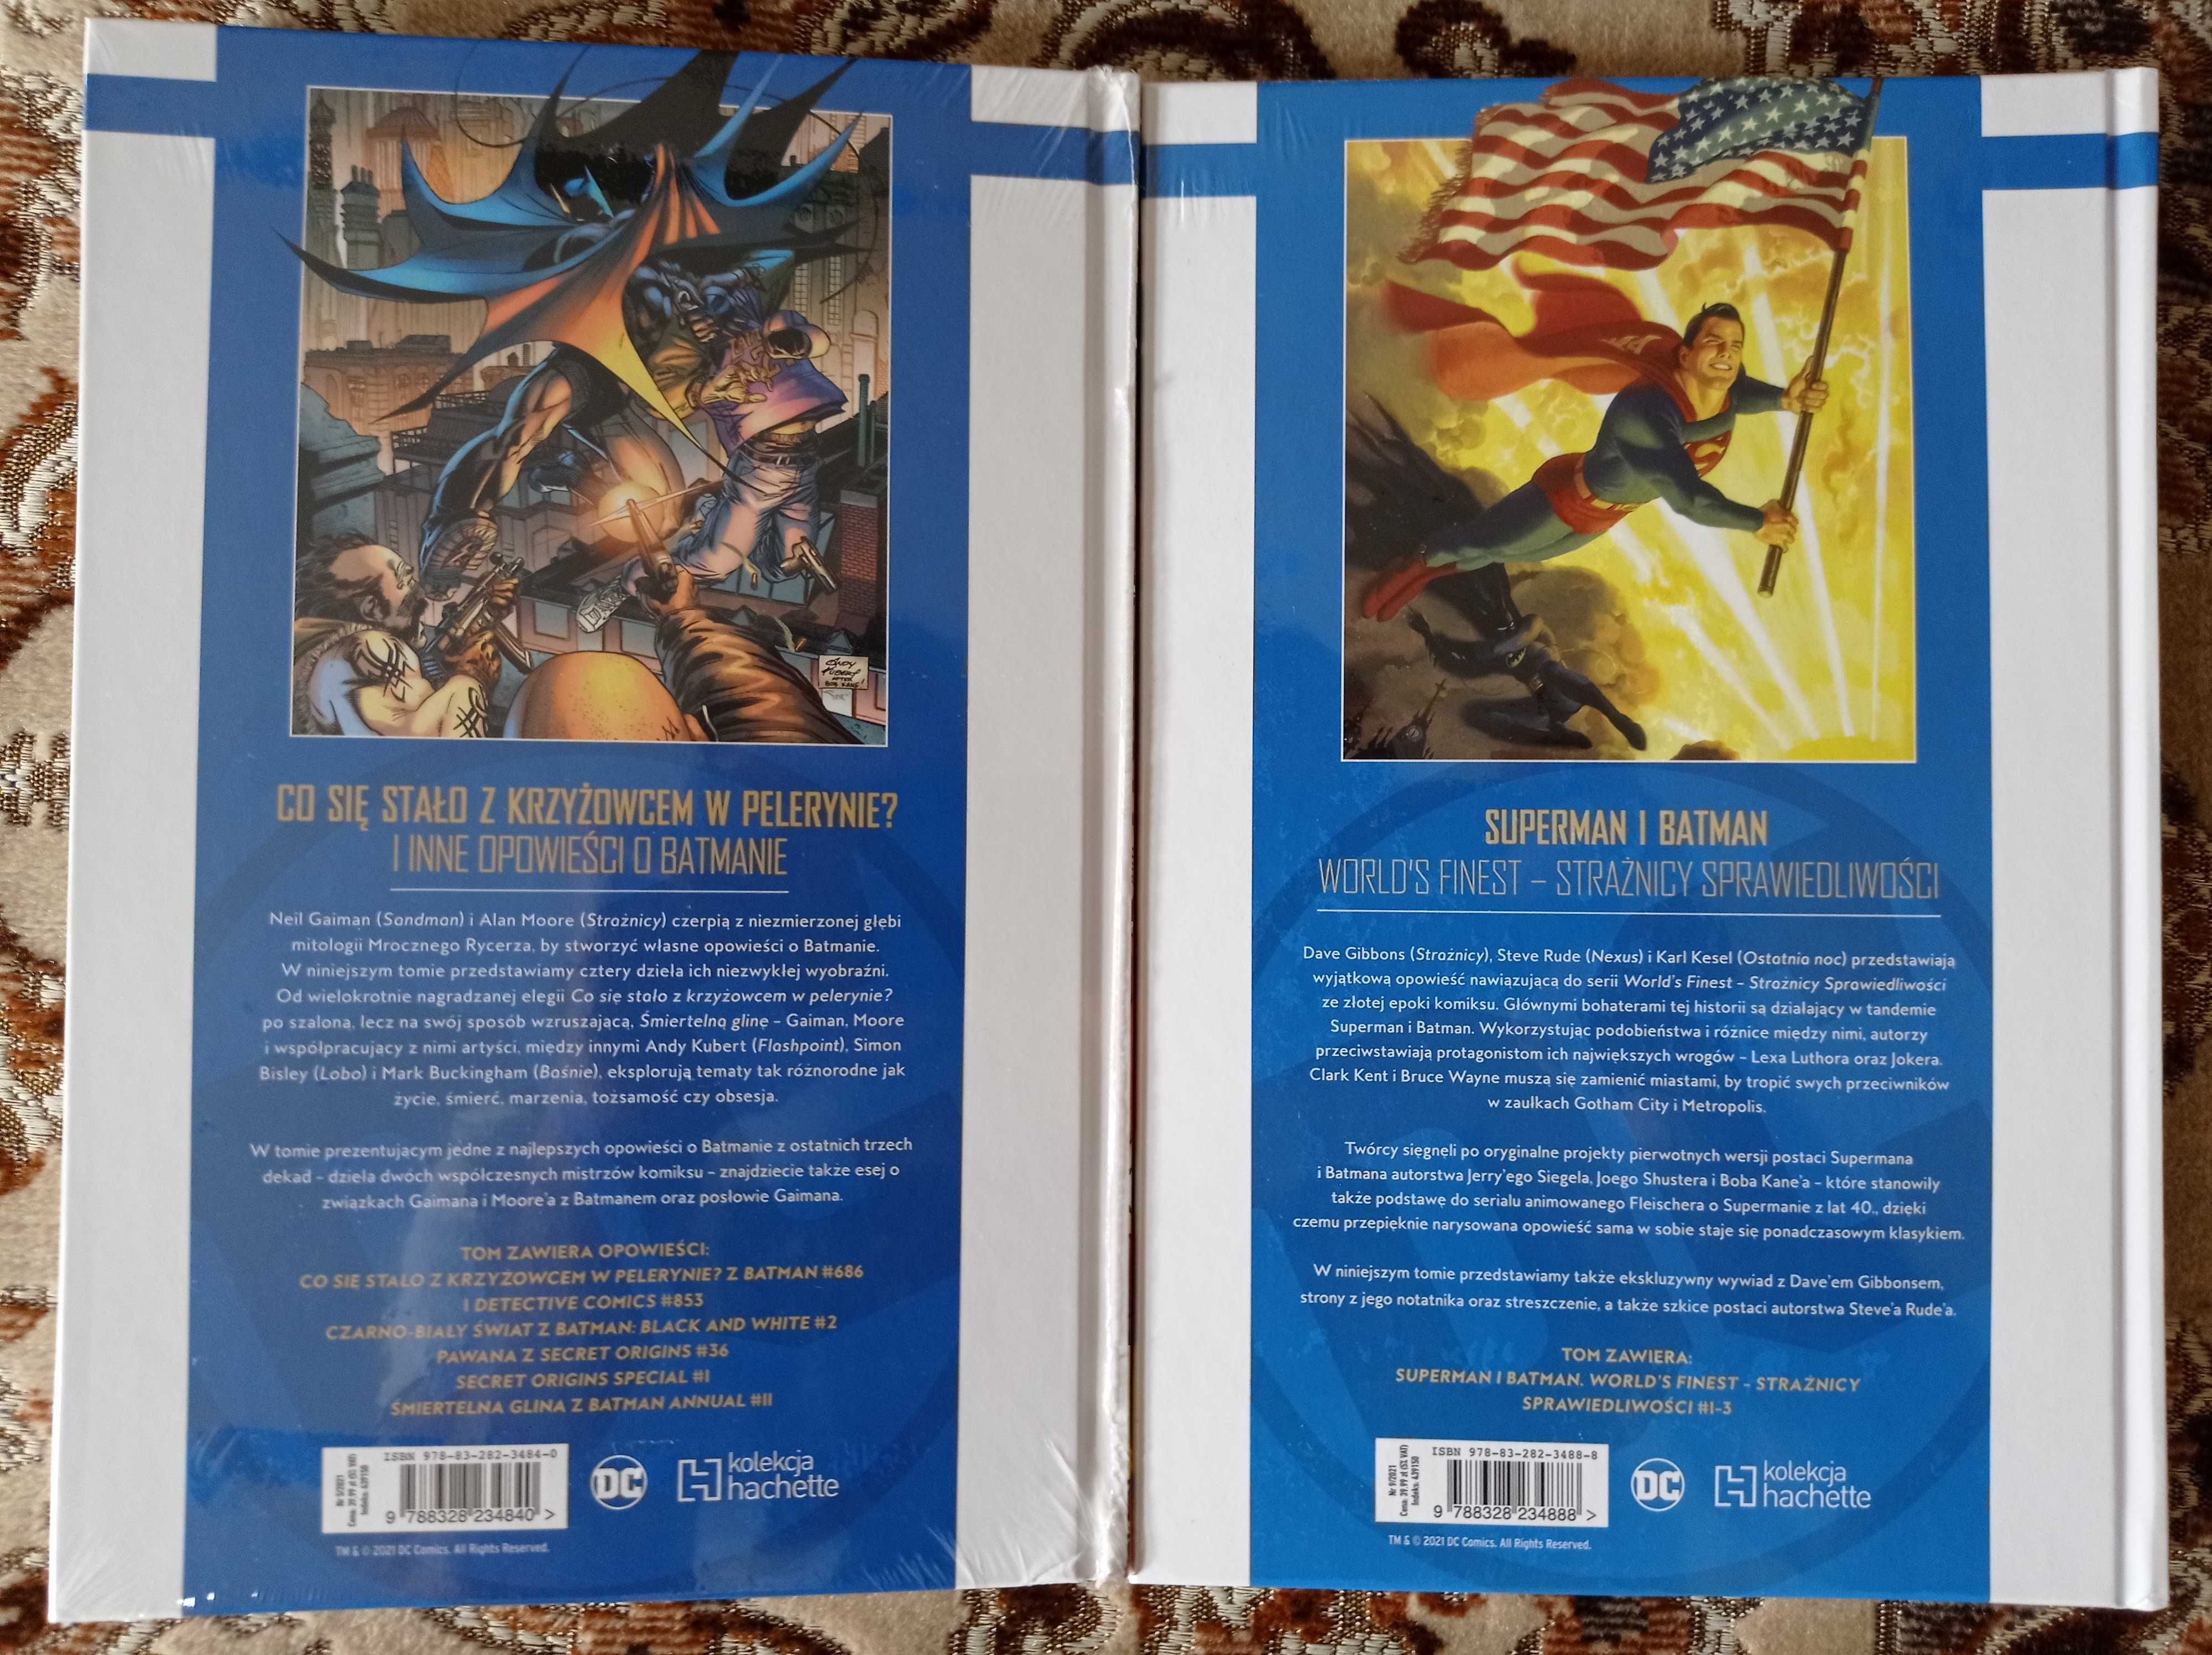 Bohaterowie i Złoczyńcy DC Batman tom  5 i 9 Superman Hachette